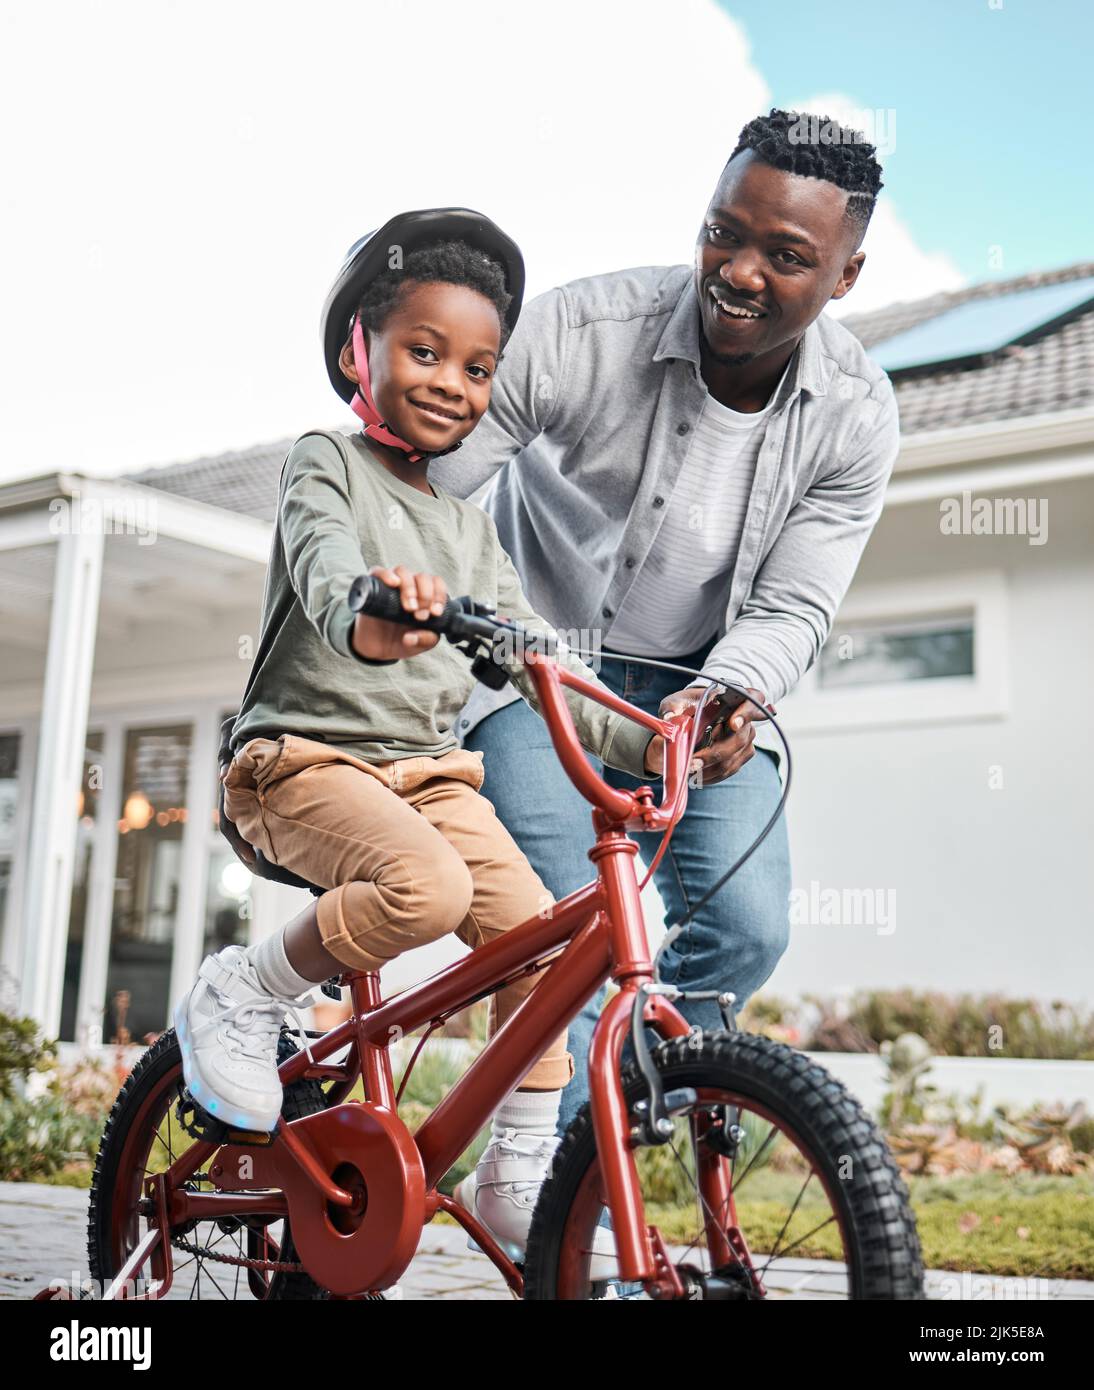 Sviluppare competenze per tutta la vita, divertendosi. Ritratto di un ragazzo adorabile imparare a guidare una bicicletta con il padre all'aperto. Foto Stock